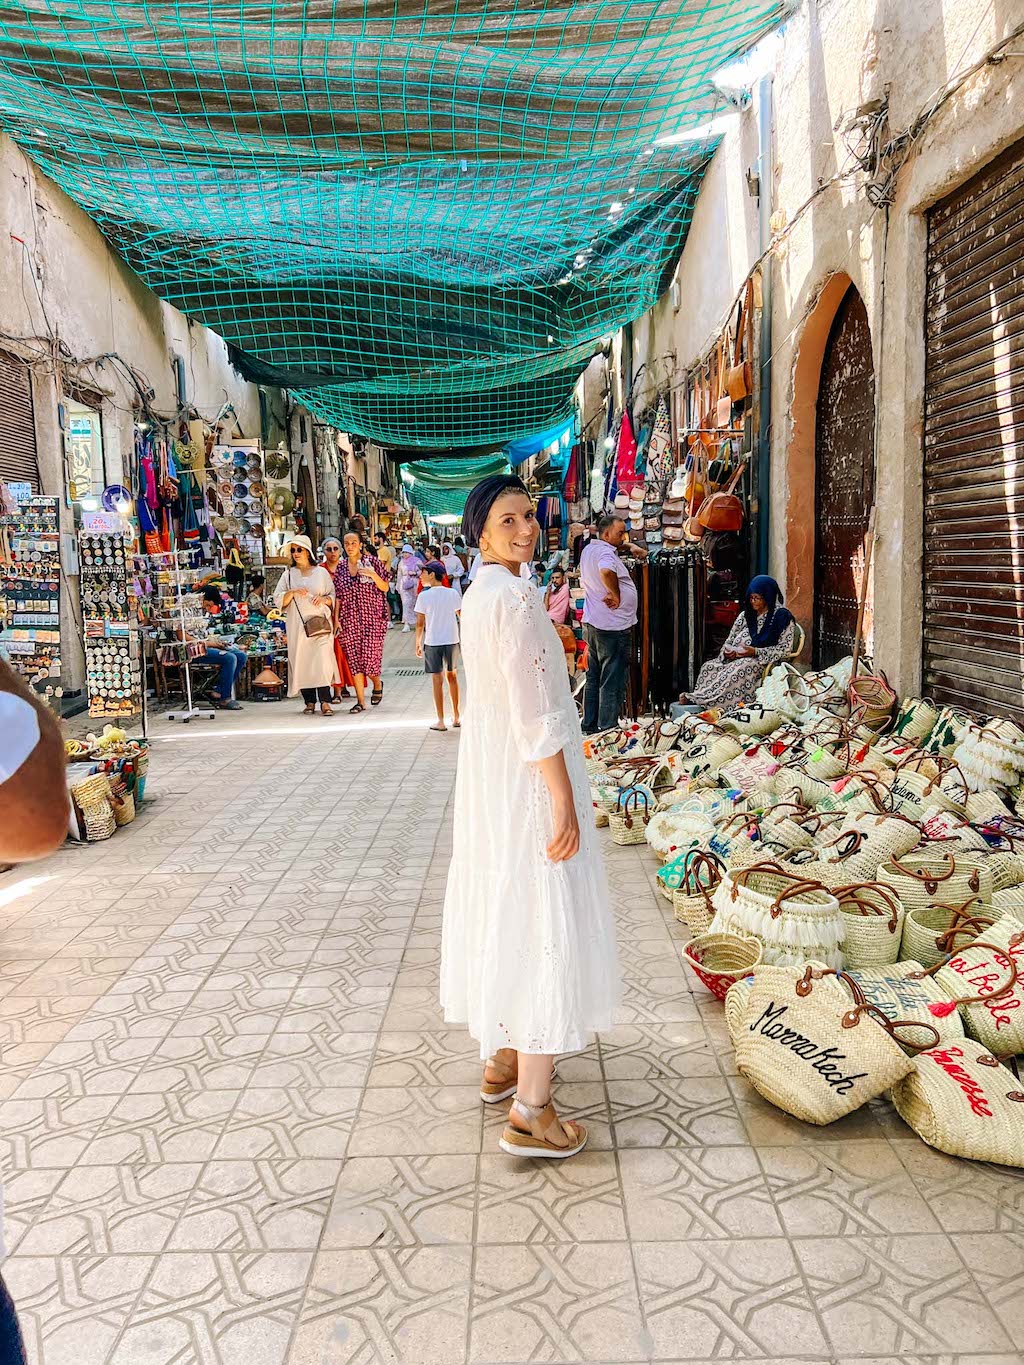 Ellie in Marrakech souk